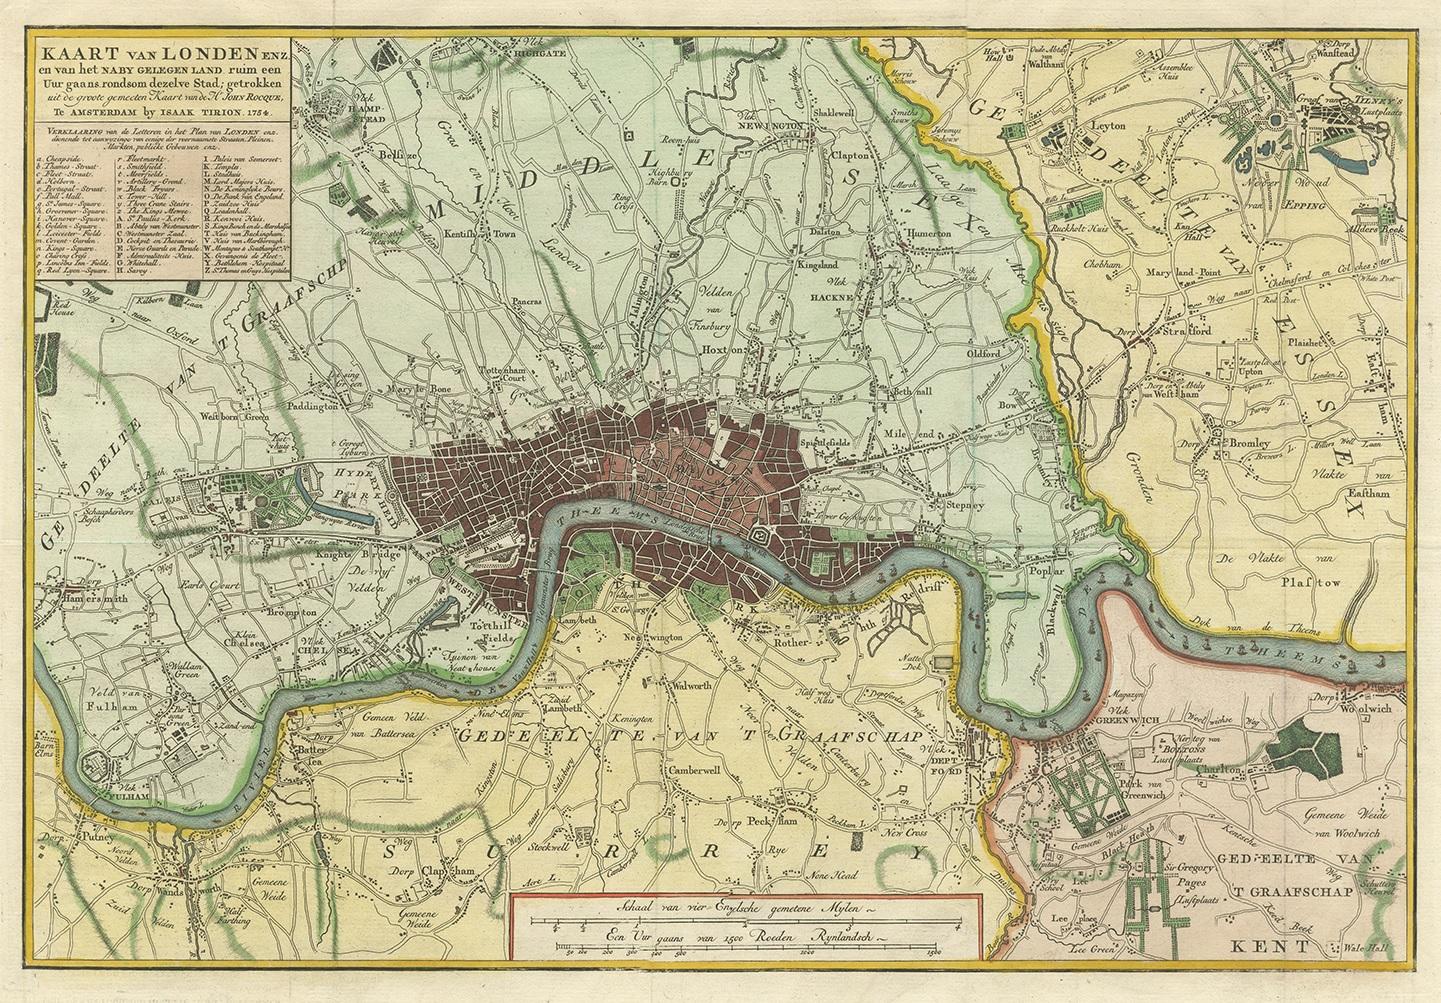 Antique map titled 'Kaart van Londen enz. en van het naby gelegen land ruim een Uur gaans rondsom dezelve Stad; getrokken uit de groote gemeeten Kaart van Hr. John Rocque'. In the second half of the 18th century, the introduction of turnpike roads